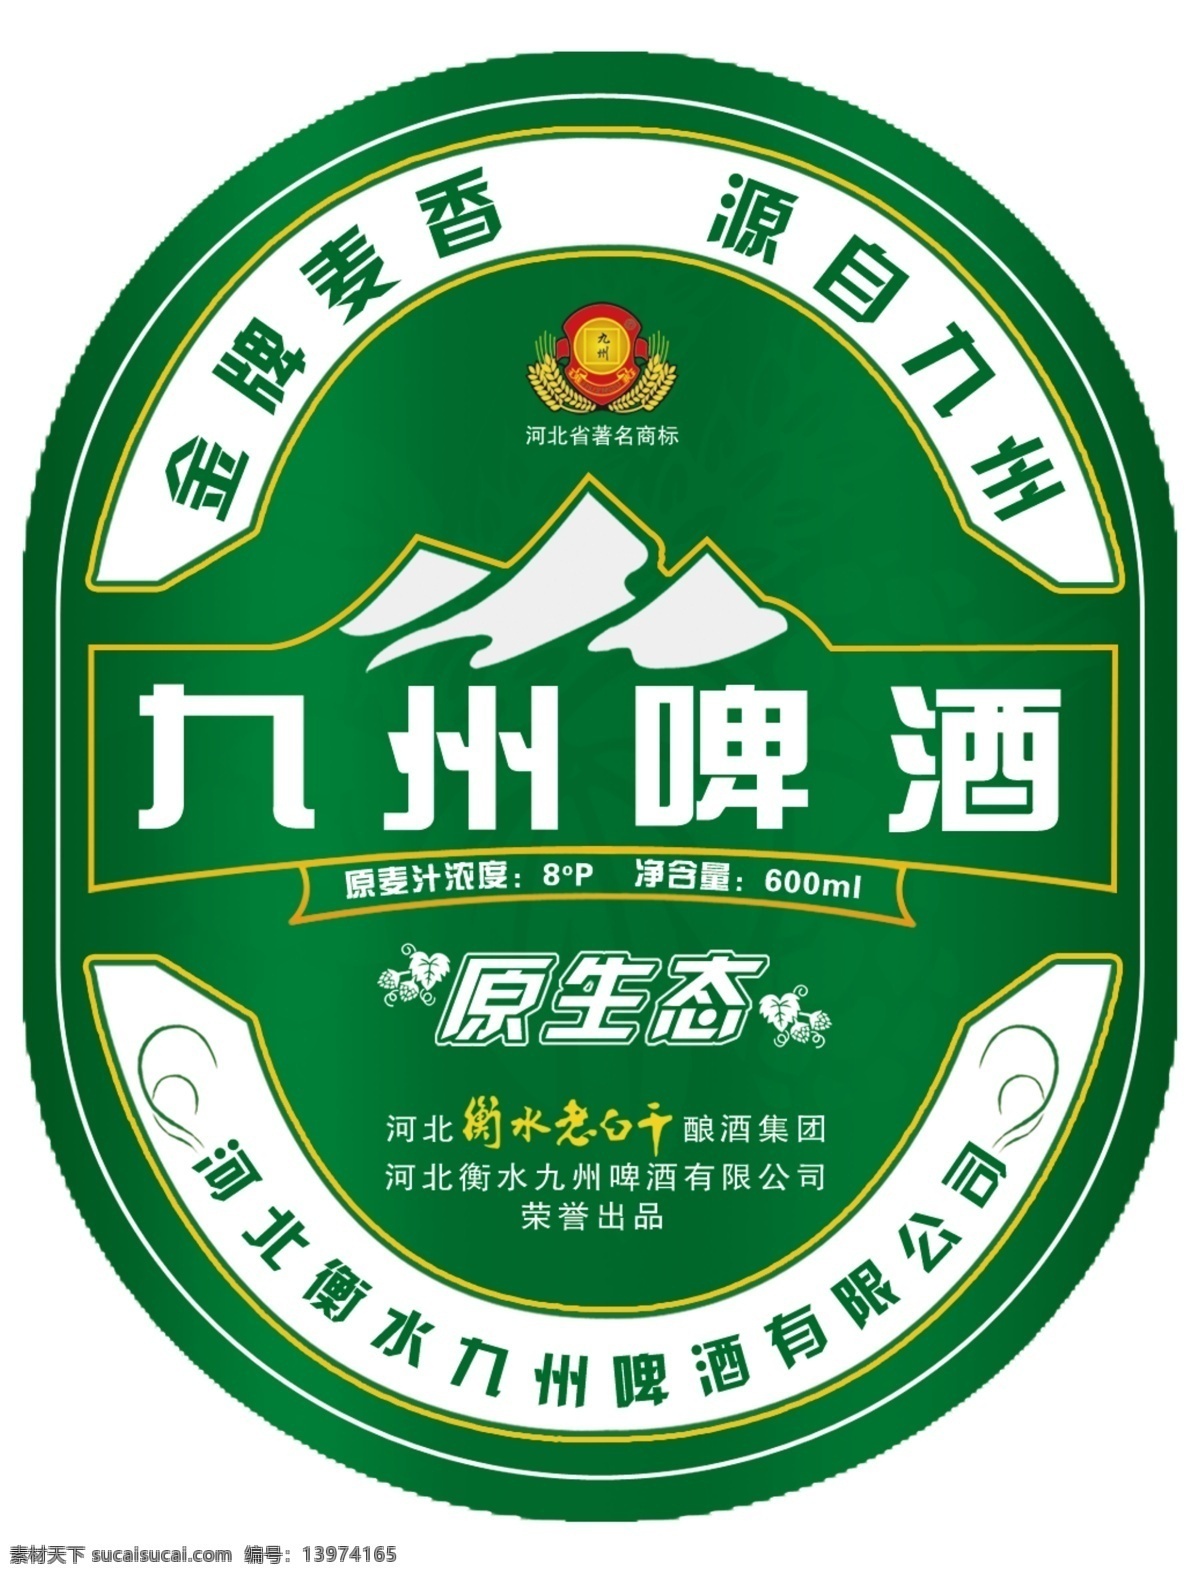 包装设计 广告设计模板 啤酒 瓶标 源文件 九州 原生态 模板下载 九州原生态 啤酒标 啤酒商标 矢量图 日常生活